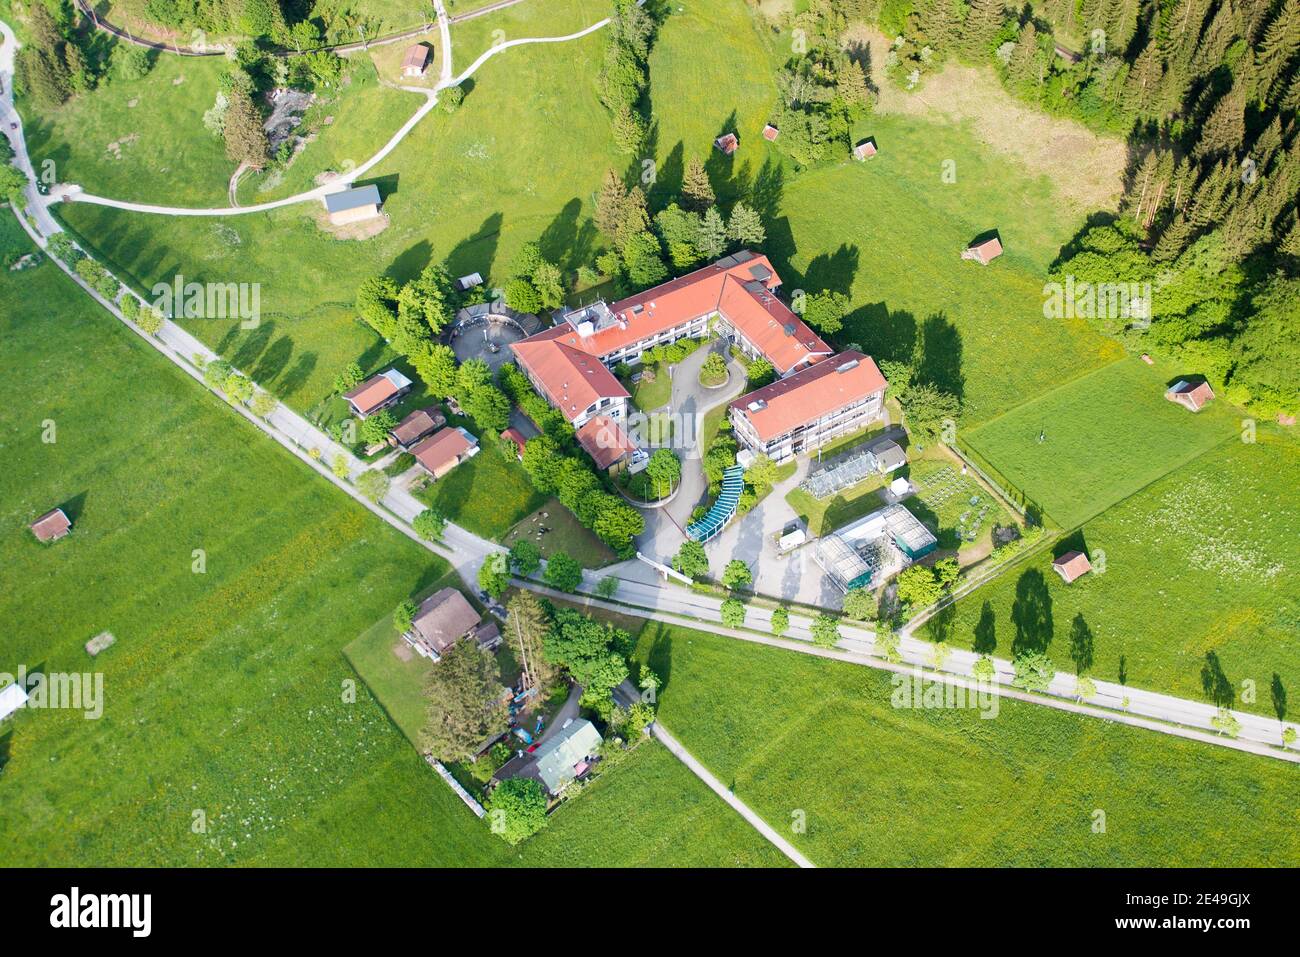 KIT, research institute, Garmisch-Partenkirchen, aerial view, Werdenfelser Land, Oberland, Bavaria, Germany Stock Photo